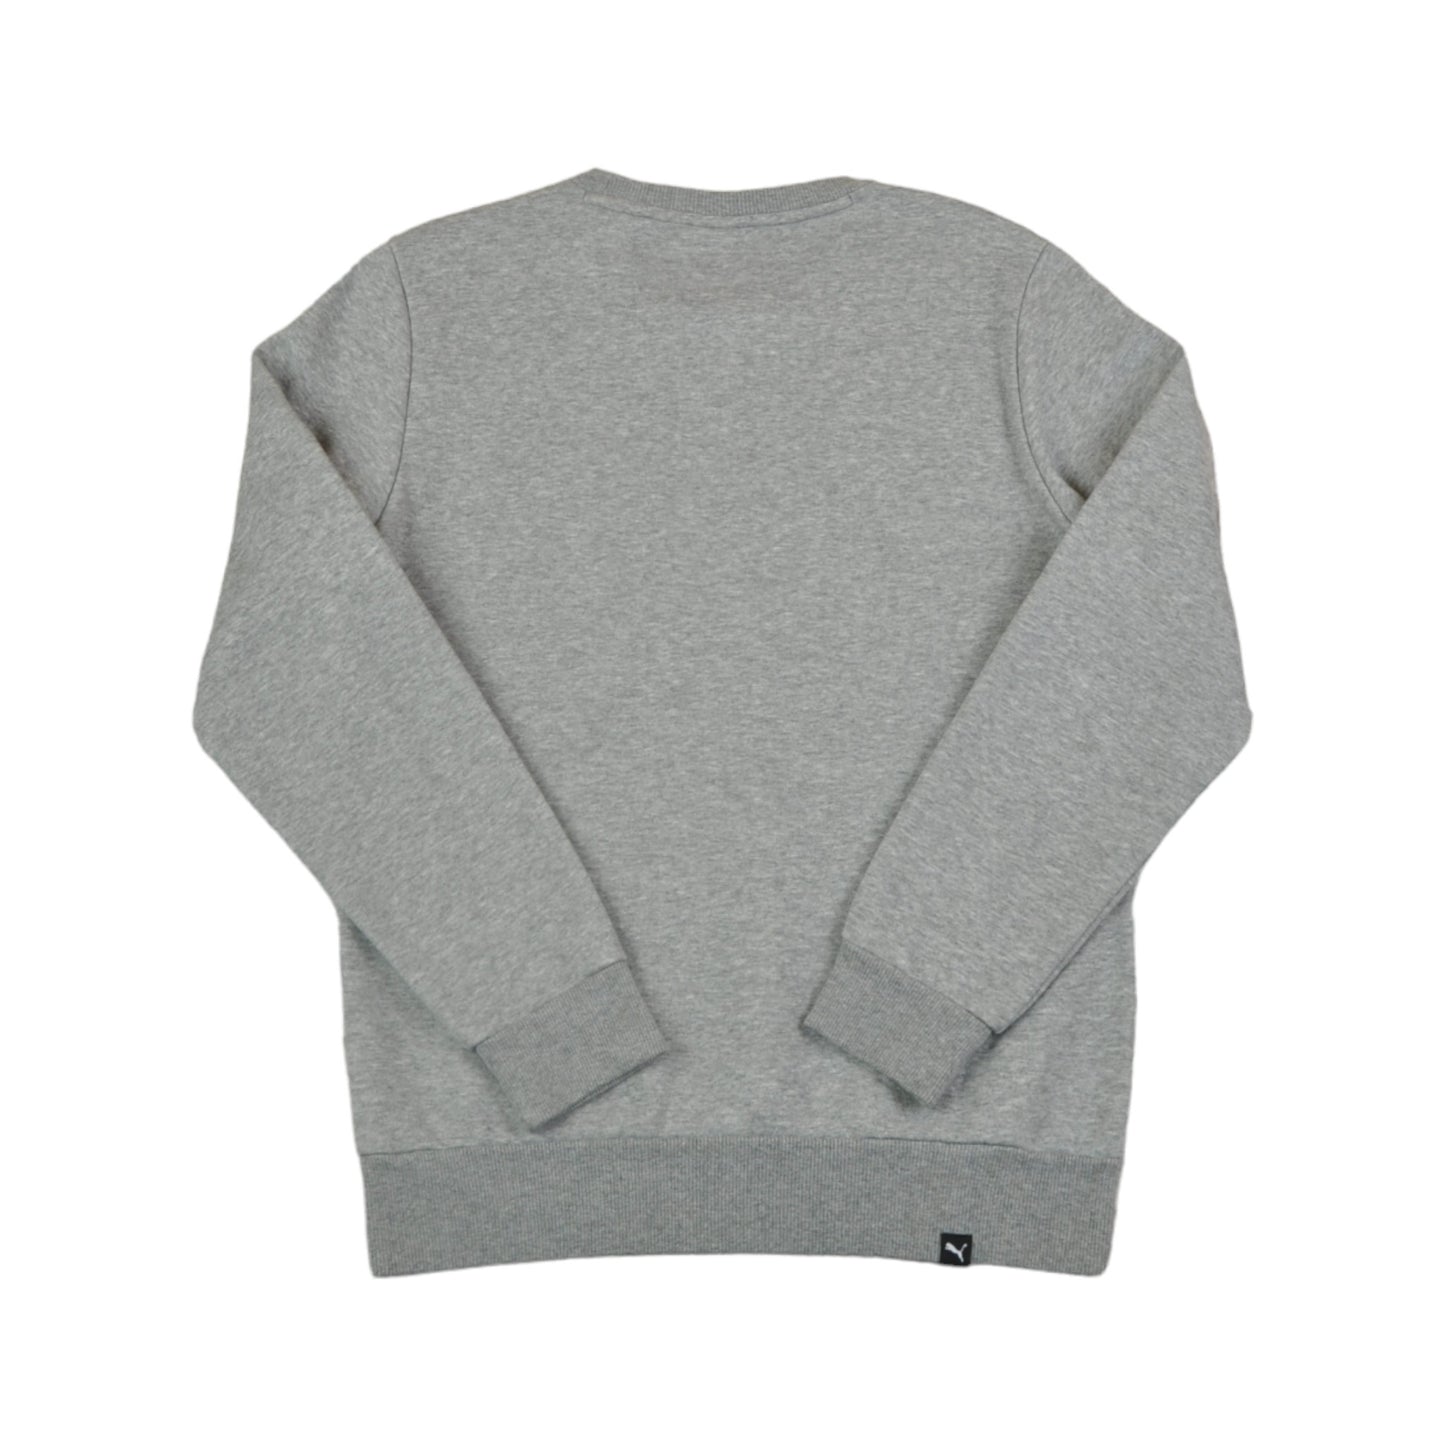 Vintage Puma Crewneck Sweatshirt Grey XS